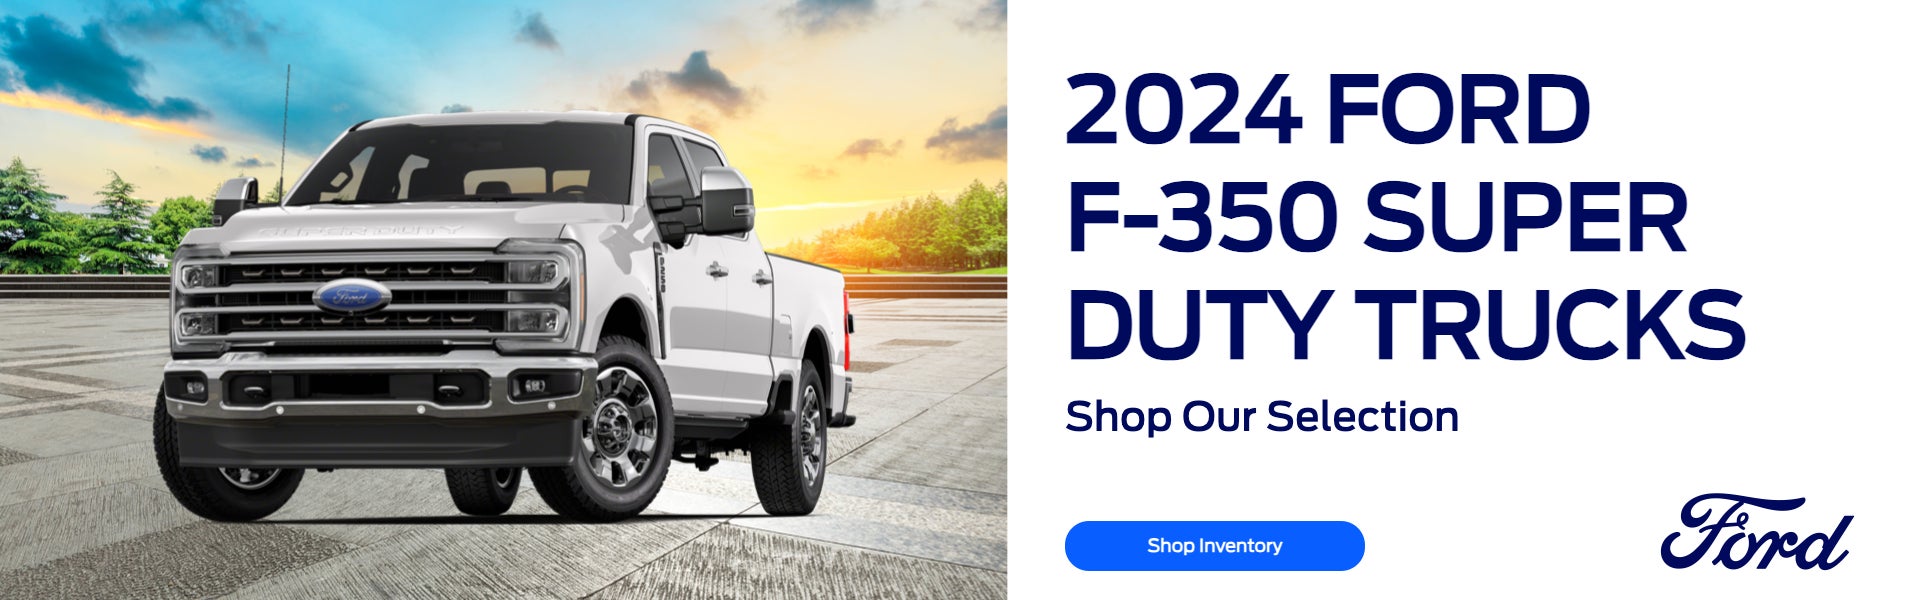 2024 Ford F-350 Super Duty Trucks